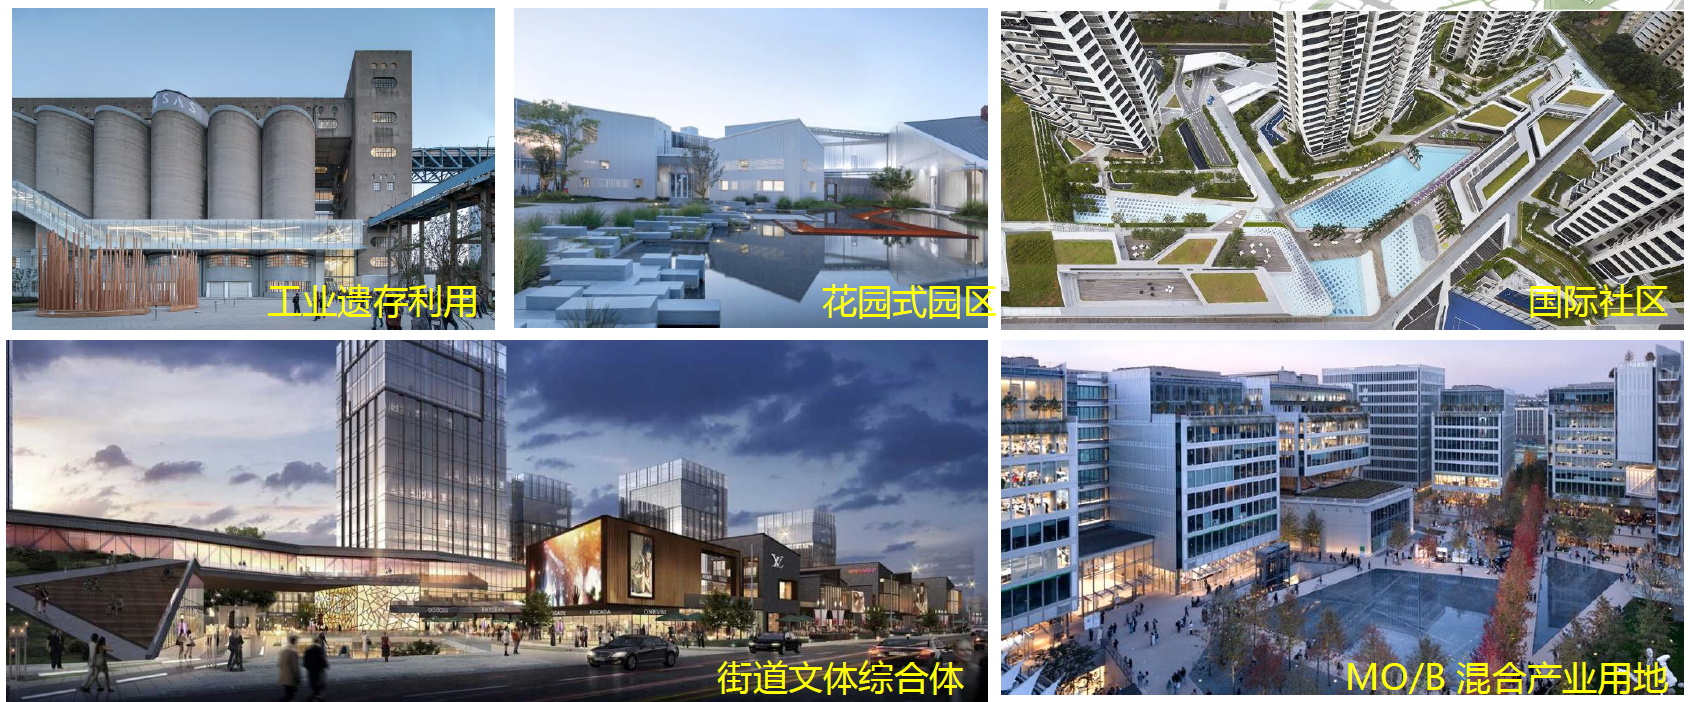 30平方公里老工业区将“变身”科创高地 成为青岛首个片区城市更新项目！